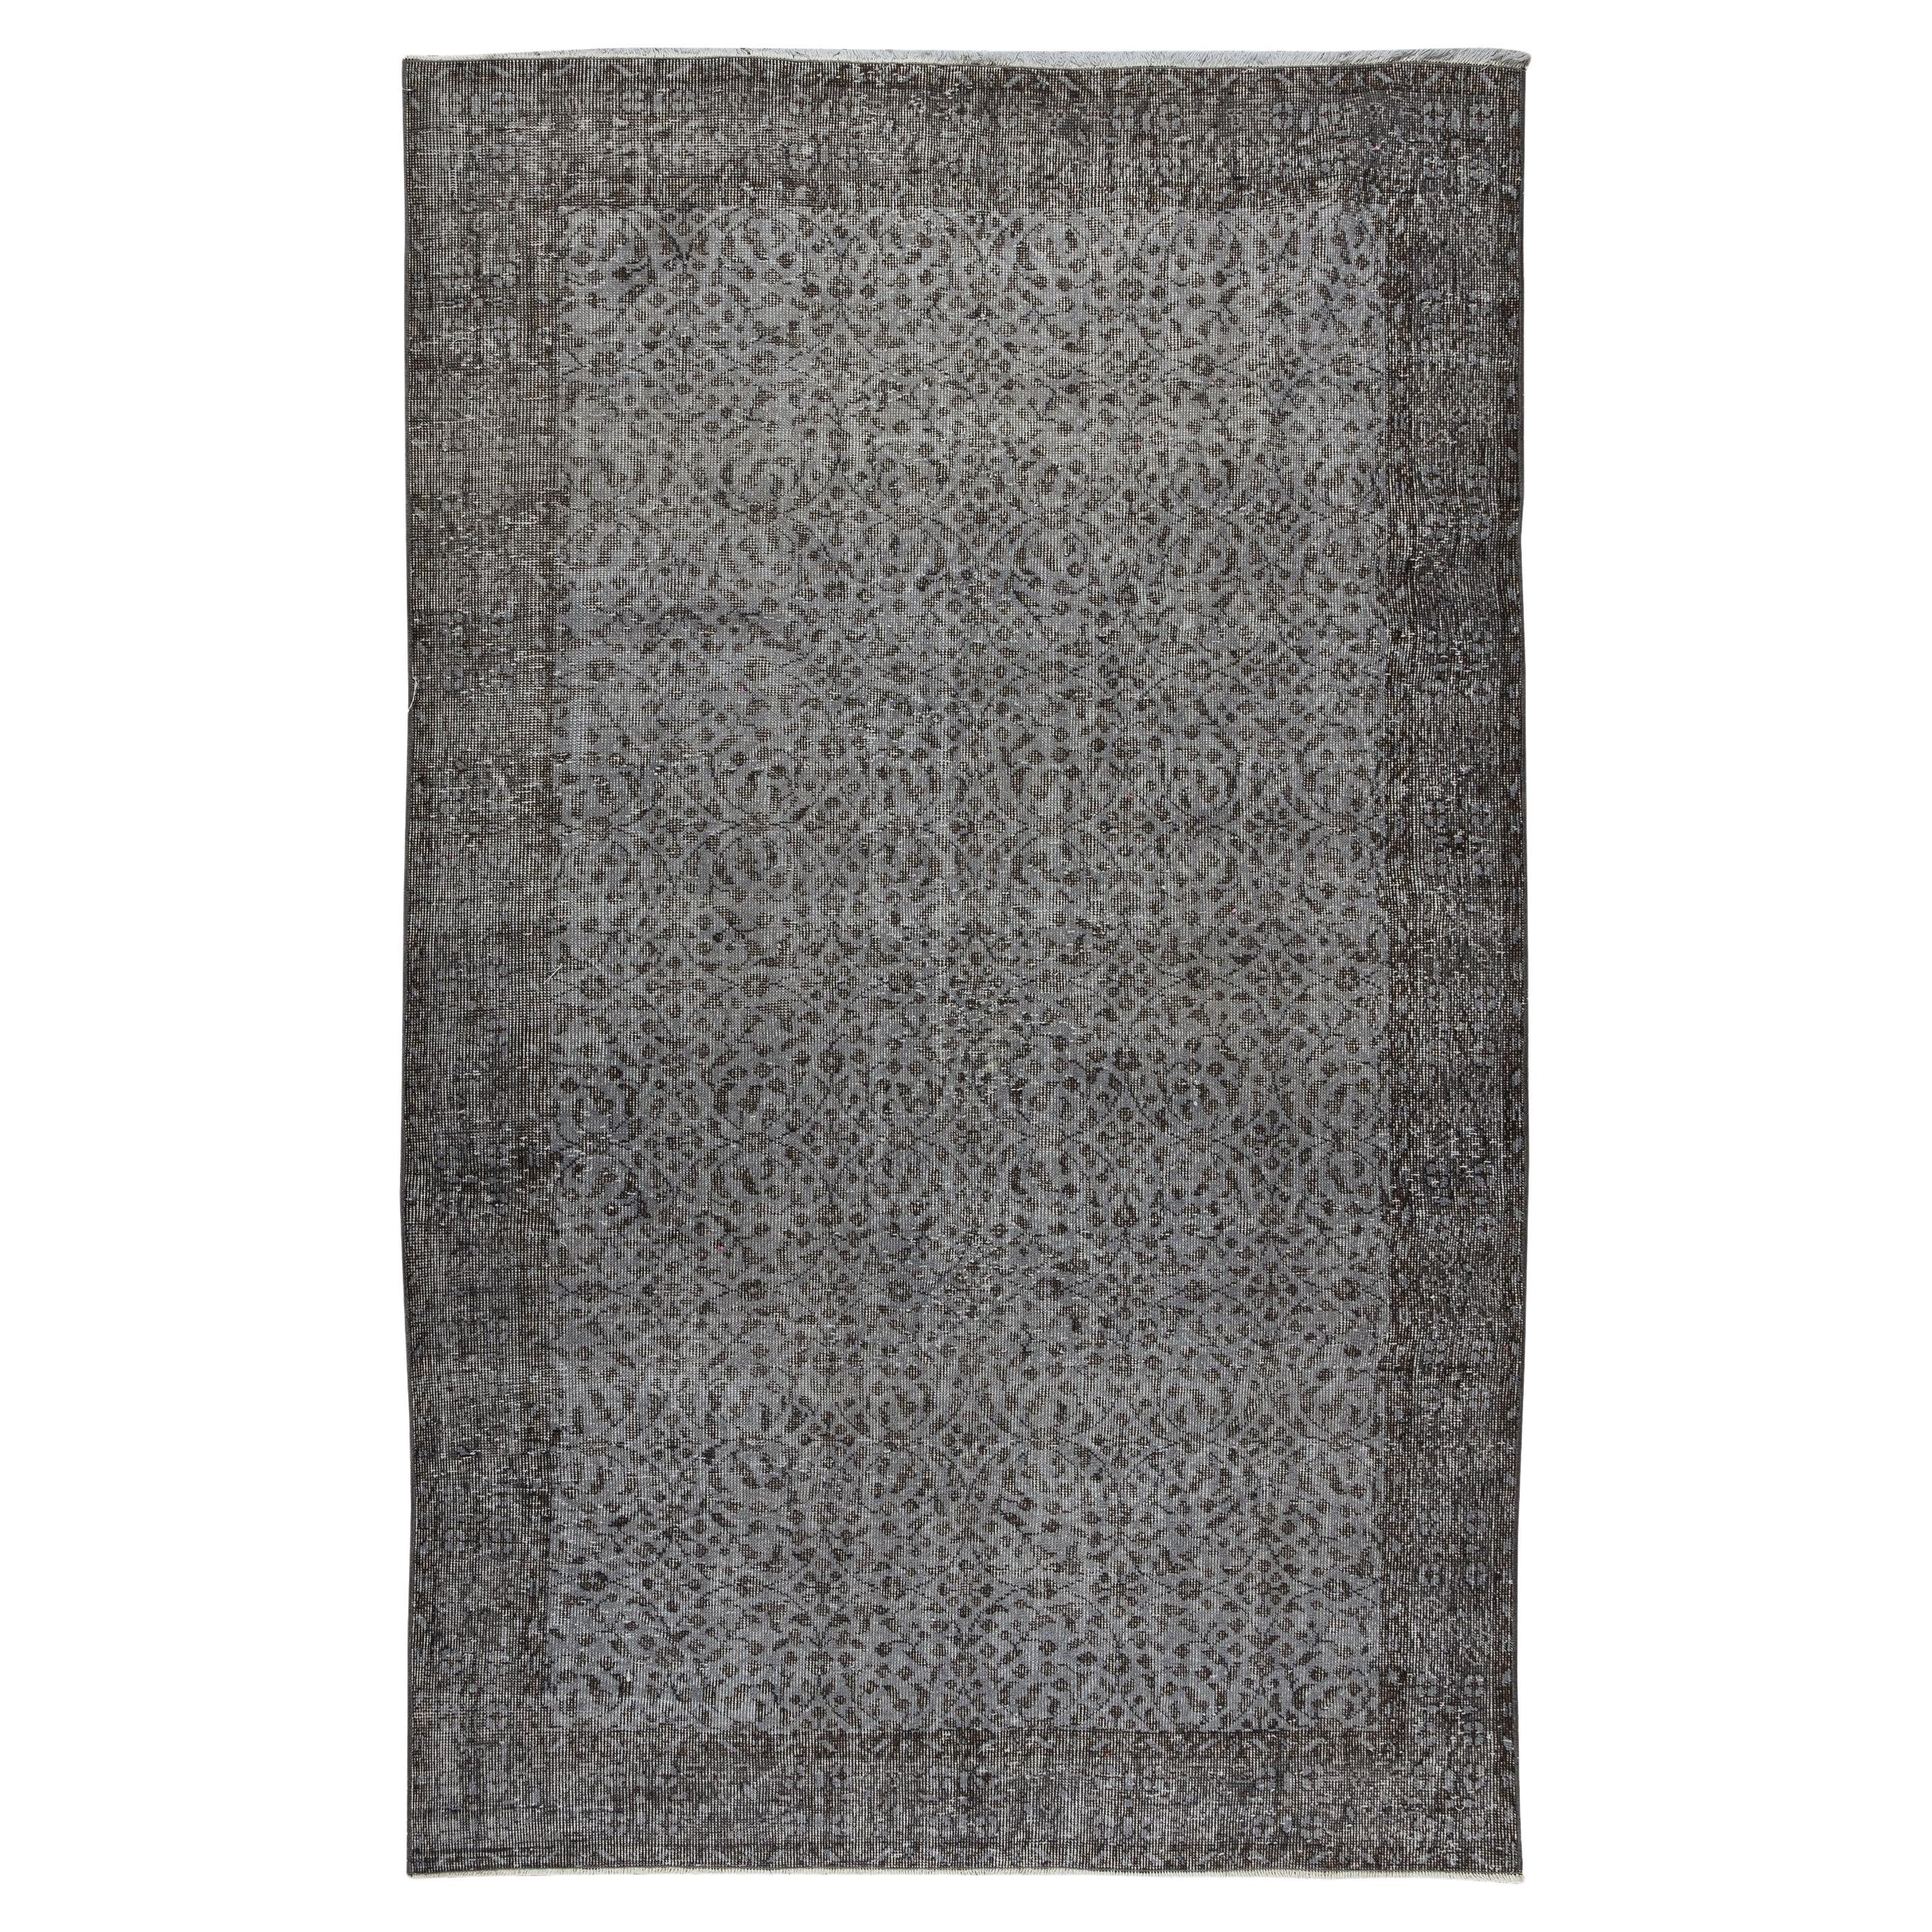 5.6x8.9 Ft Tapis turc contemporain reteint en gris, tapis vintage en laine turque